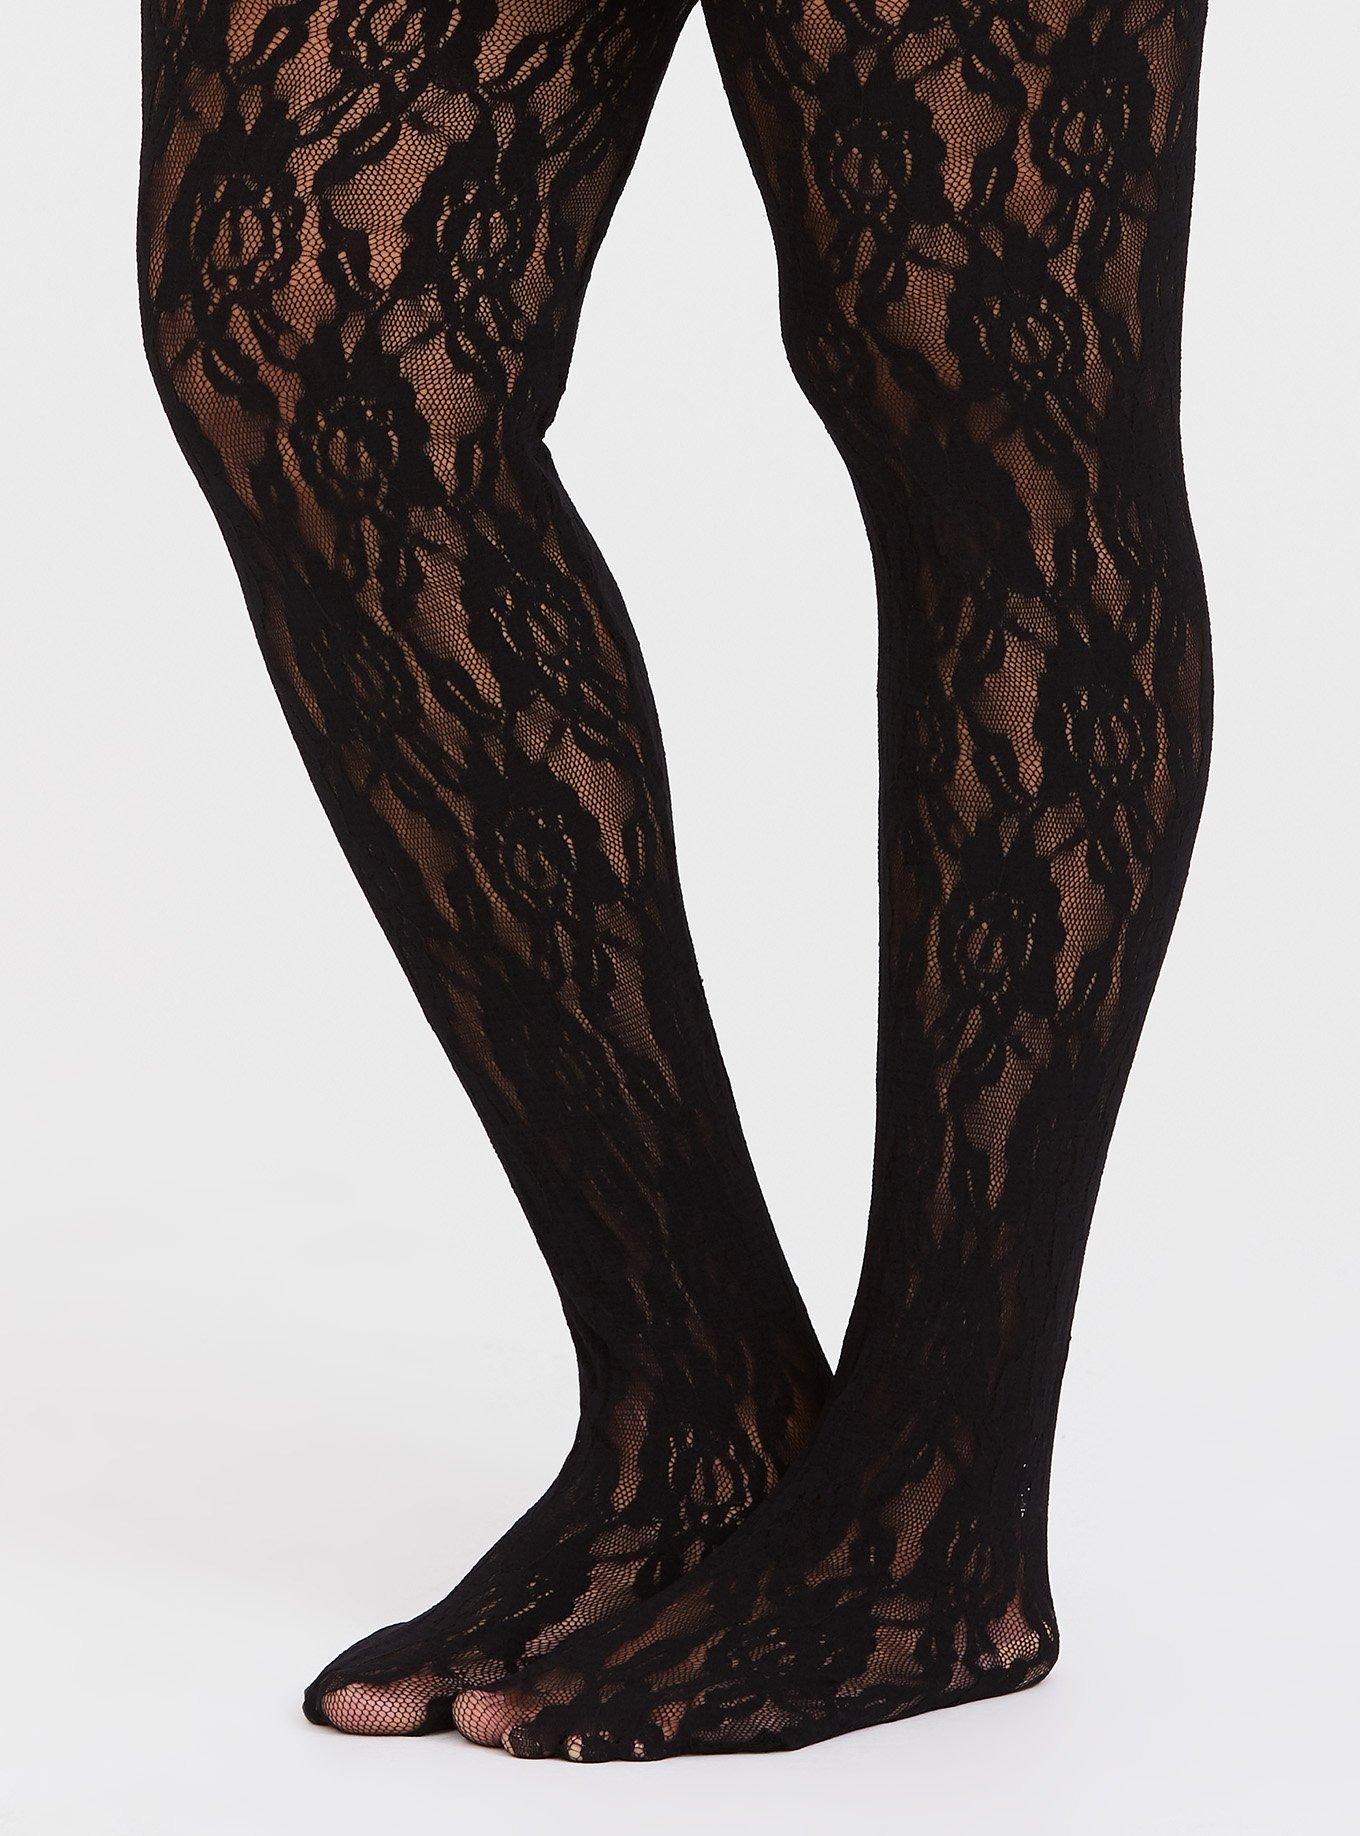 Women's Retro 80's Lace Leggings - Black, Medium